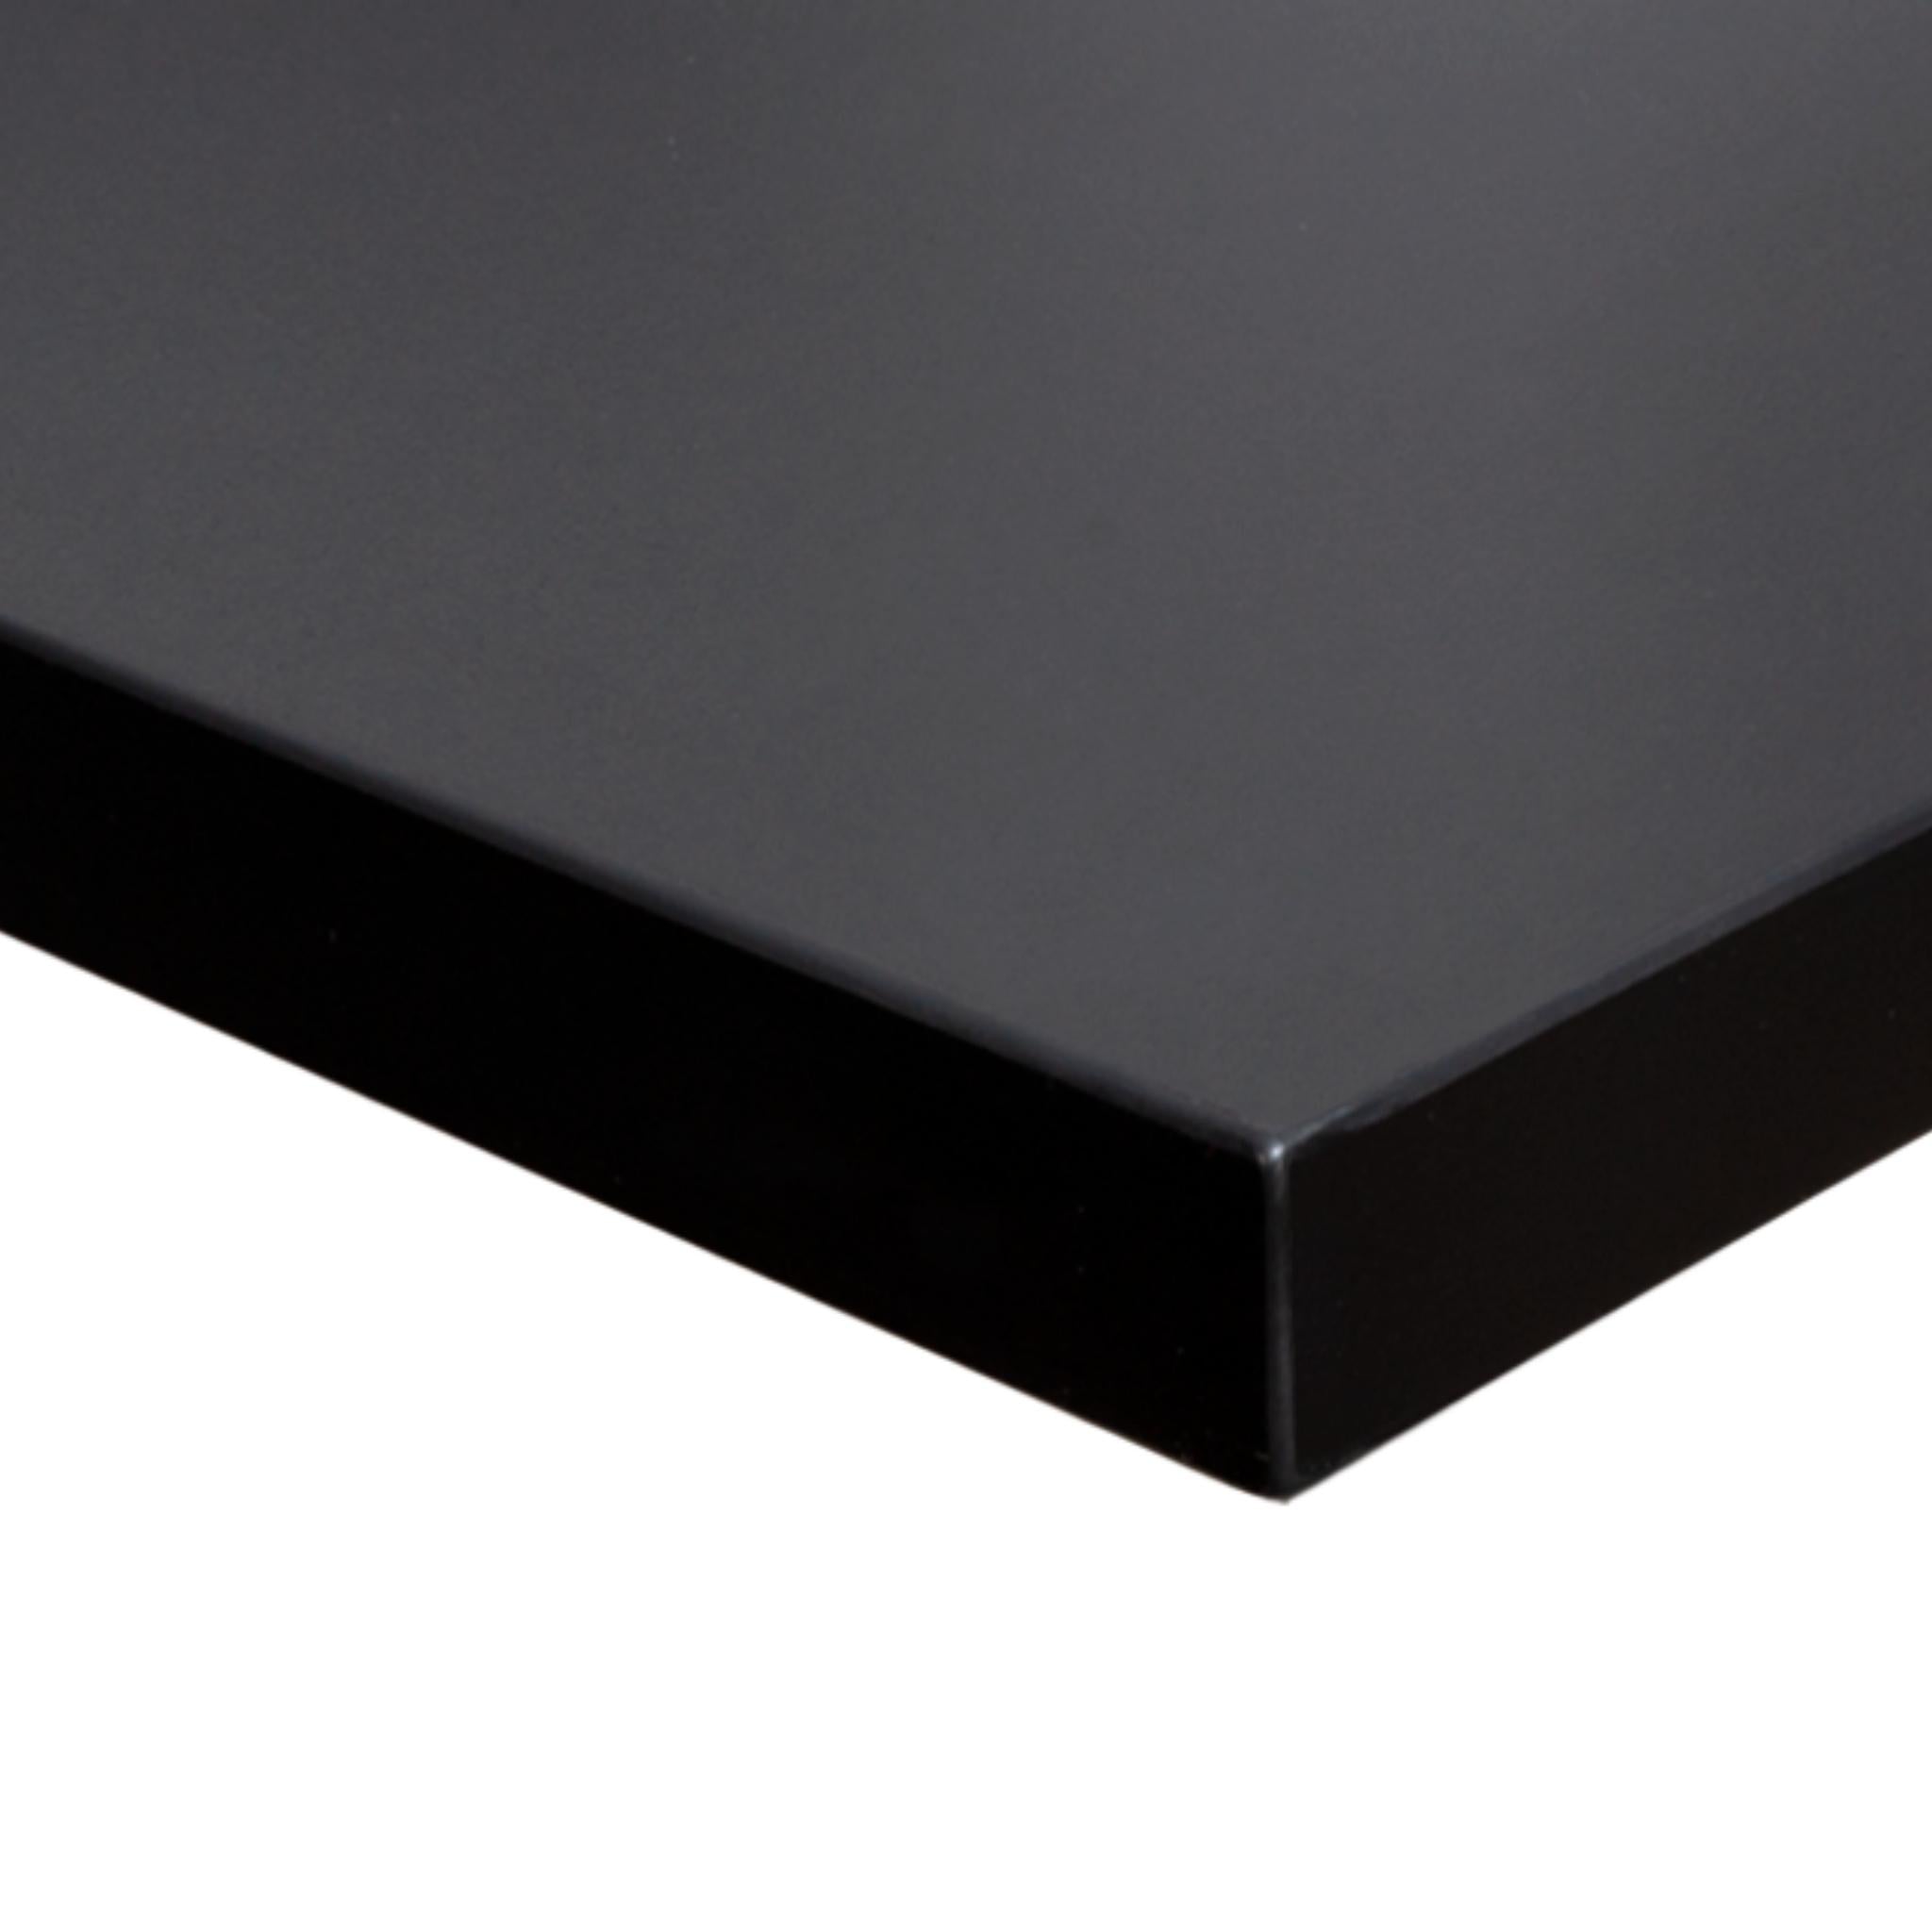 Pure Black Table Top for Desk – Progressive Desk